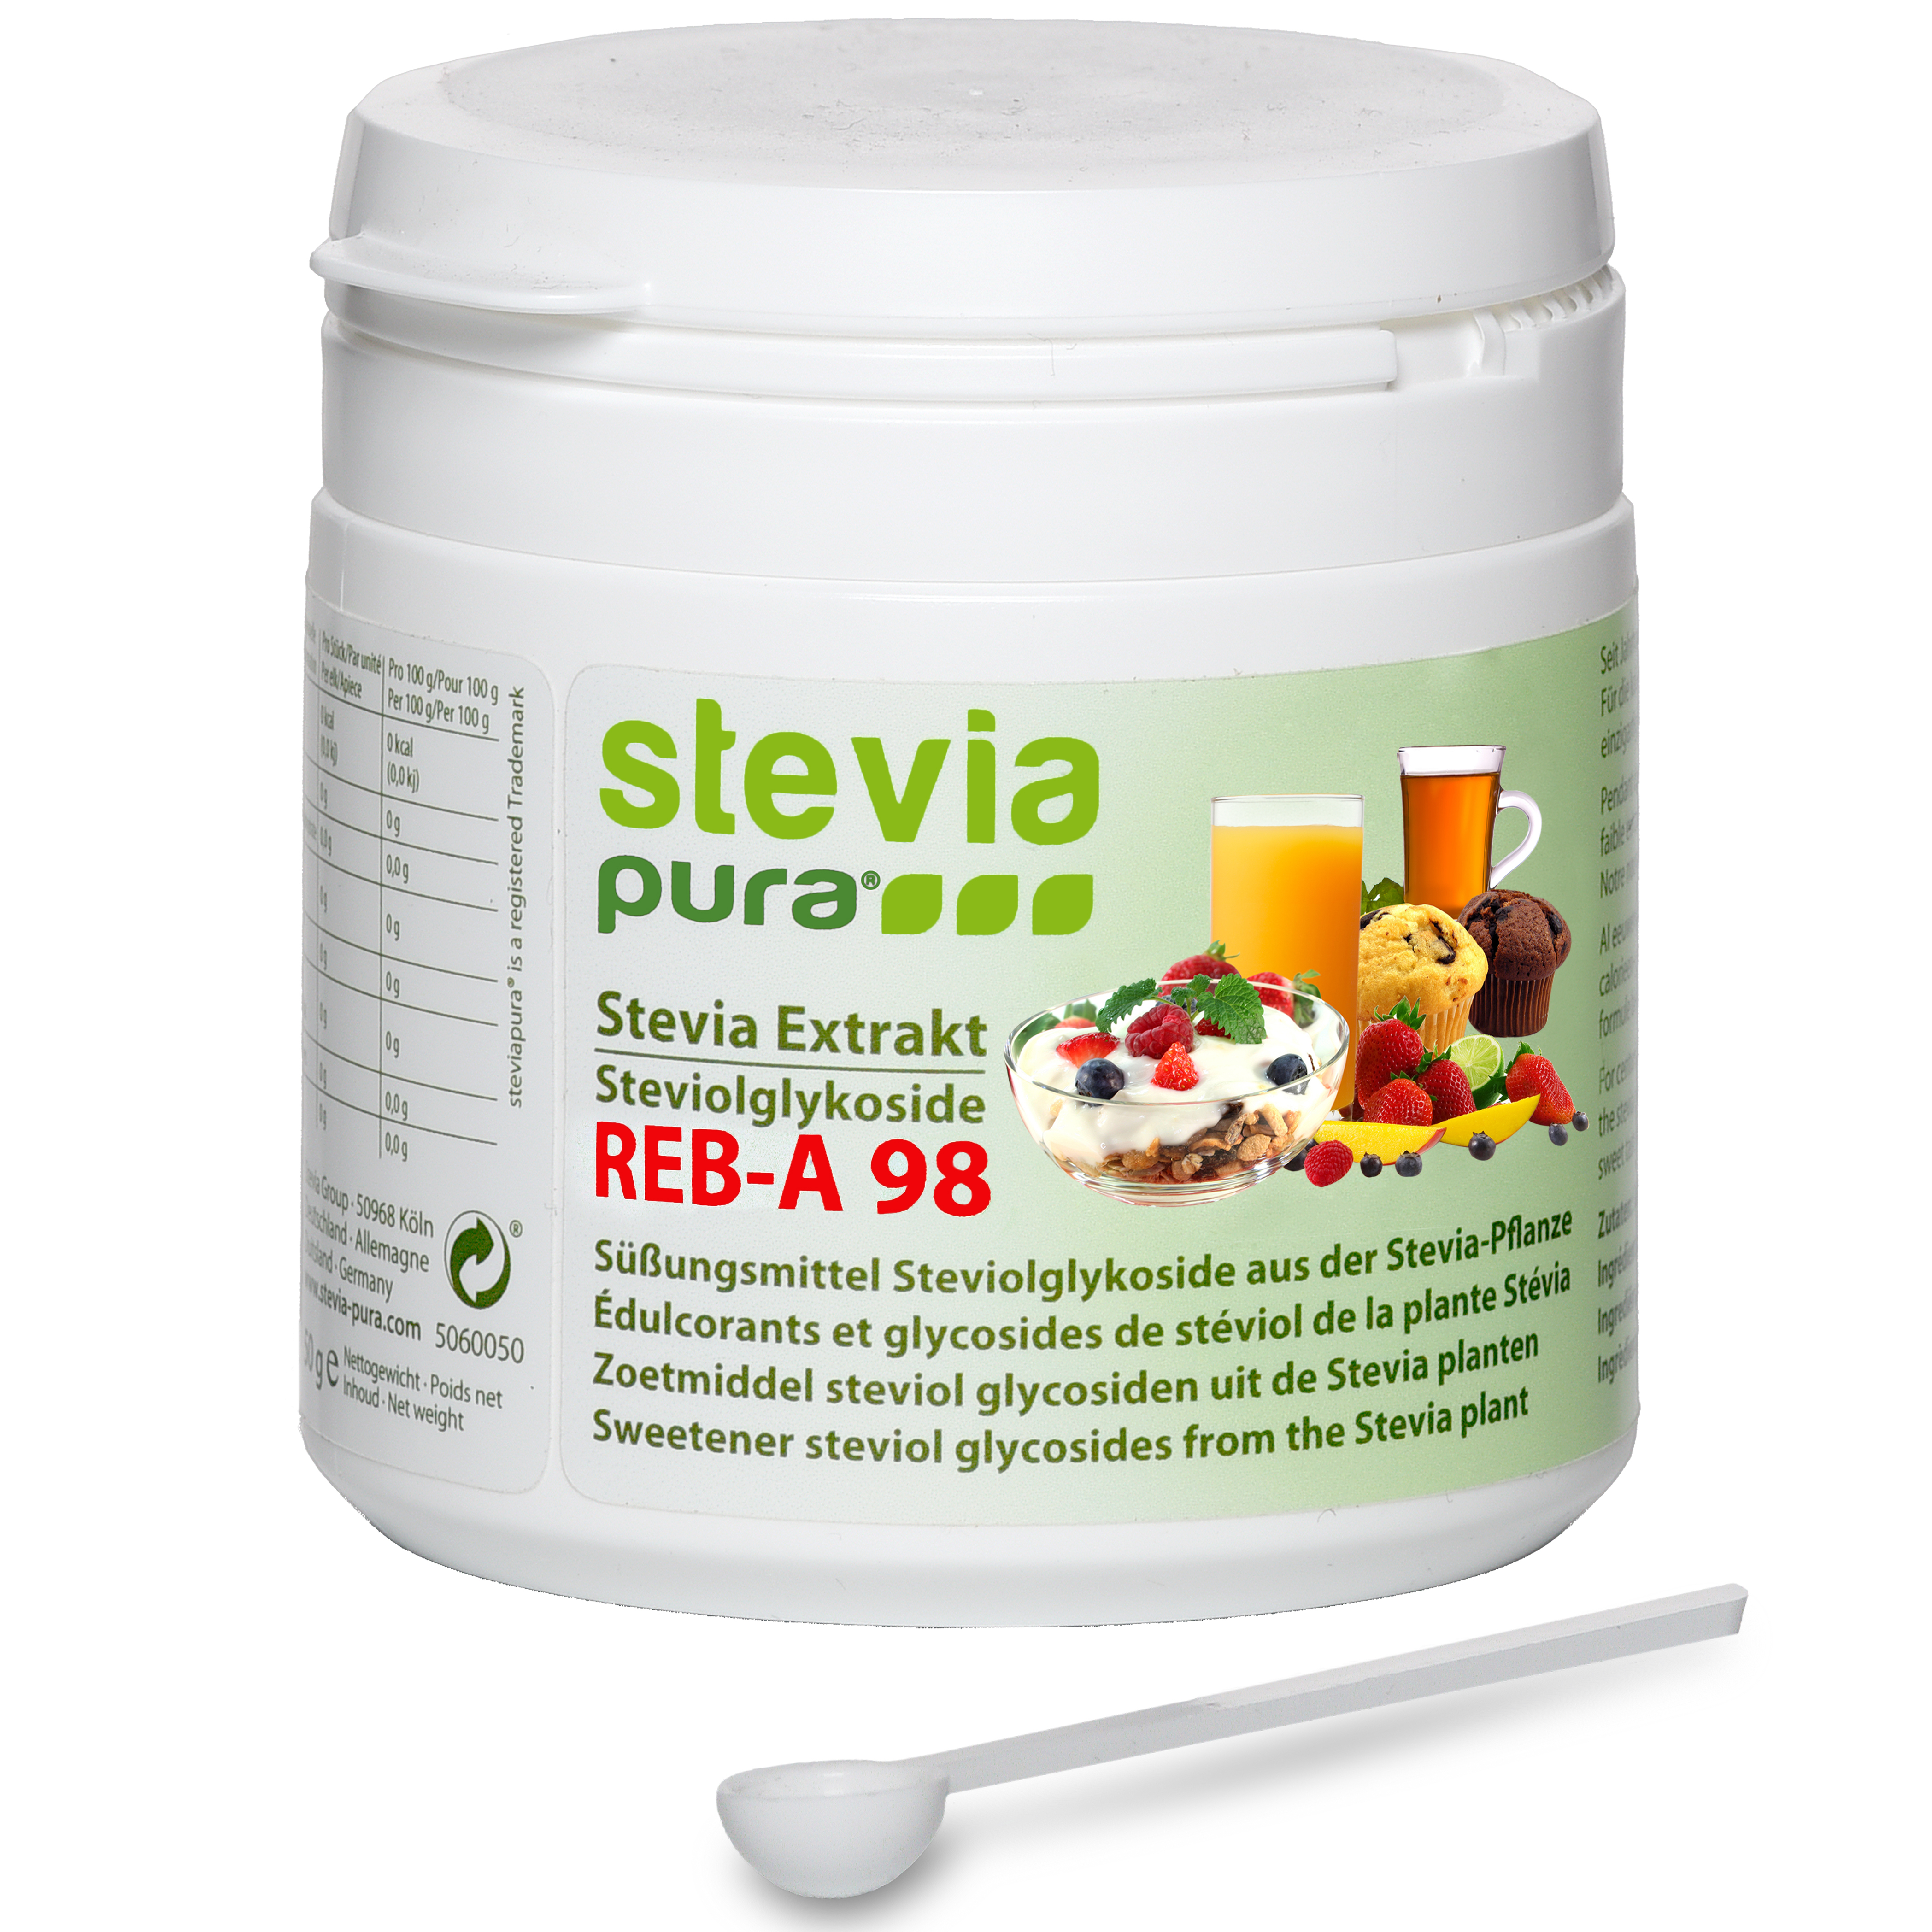 Acquistare Stevia in Polvere Estratto di Stevioside puro e senza amaro senza zucchero